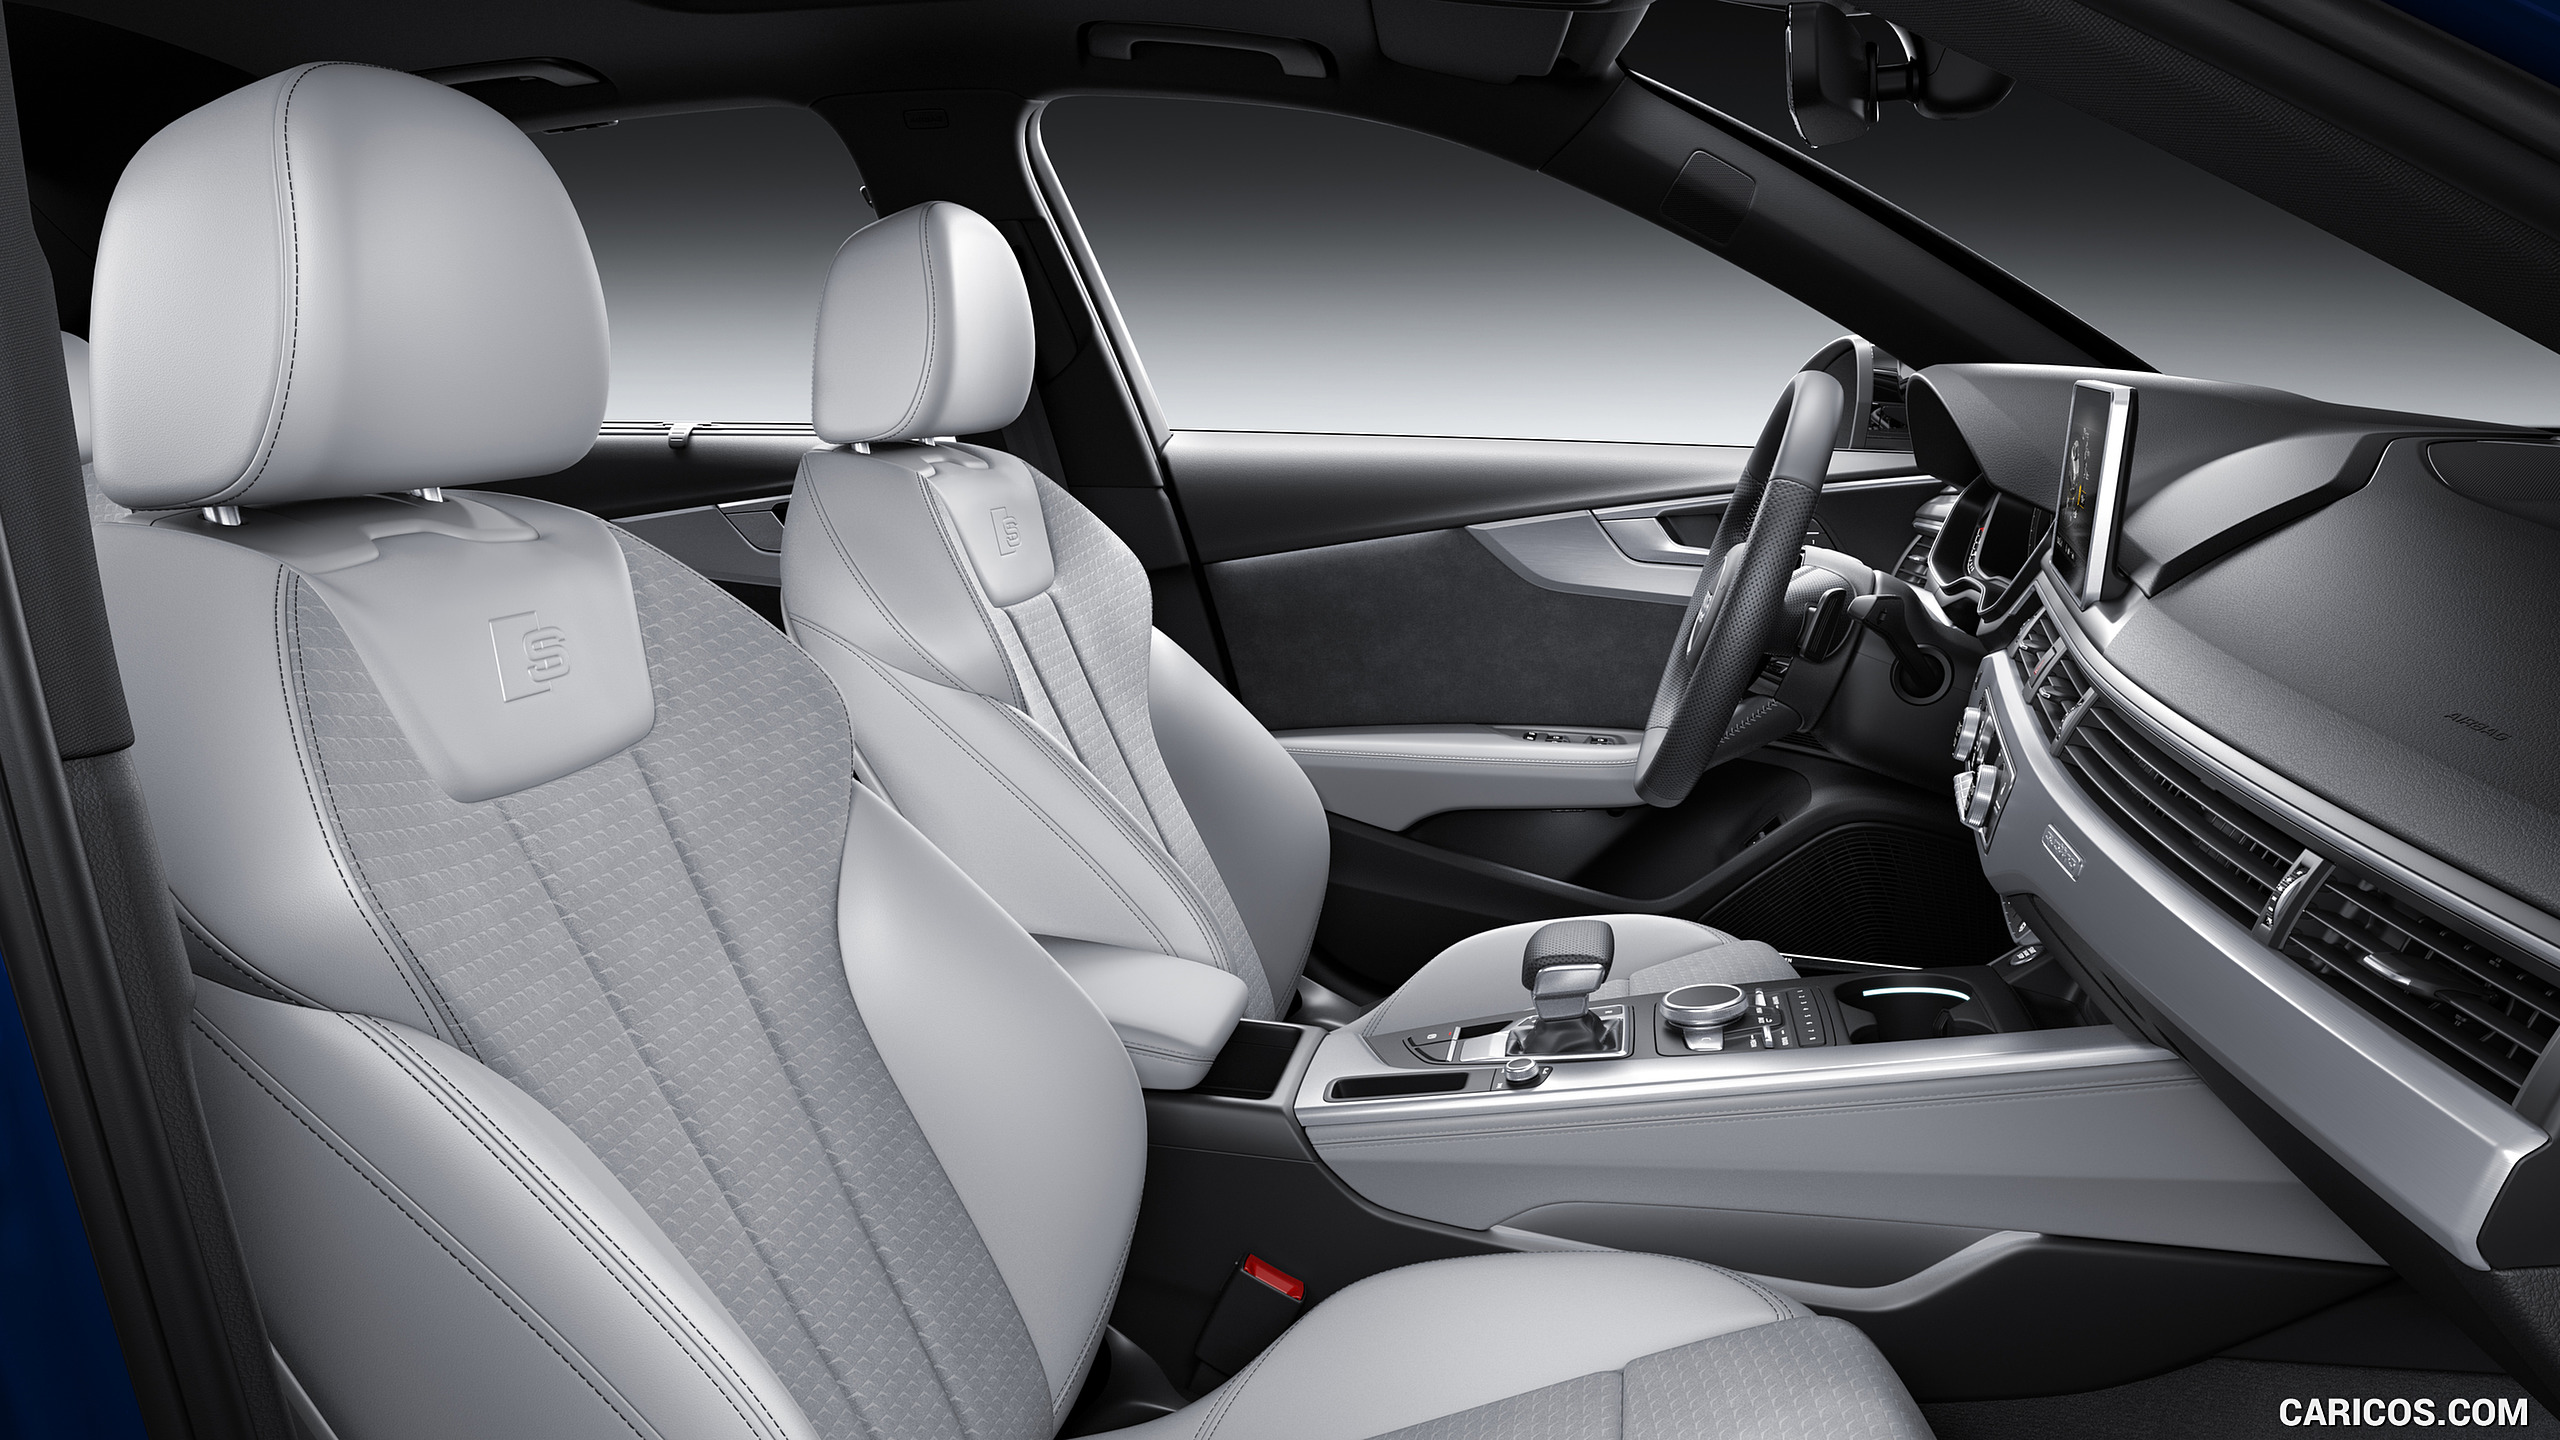 Audi A4 Interior Seats HD Wallpaper